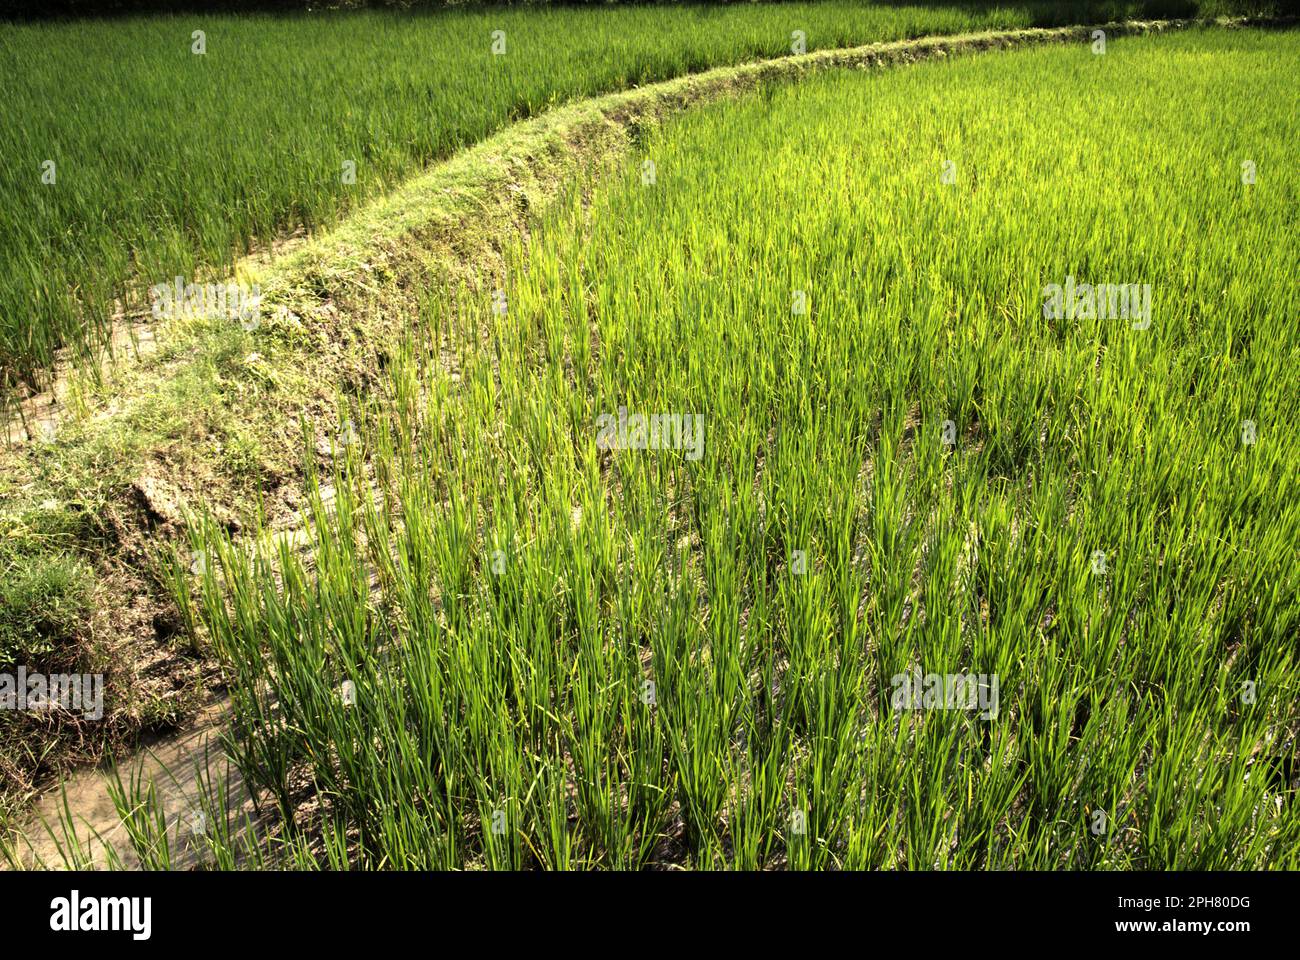 Pfad an einem Ufer durch Reisfelder in Kradenan, Blora, Zentraljava, Indonesien. In Bezug auf Entwicklungsländer könnten agroökologische Ansätze die Herausforderungen des Klimawandels und die Ernährungssicherheit angehen, so der vom Weltklimarat (Intergovernmental Panel on Climate Change, IPCC) veröffentlichte Bericht von 2023 mit dem Titel „Climate Change 2022: Impacts, Adaptation and Vulnerability“ (Klimawandel: Auswirkungen, Anpassung und Verwundbarkeit). Angesichts der Tatsache, dass Reisfelder eine wichtige Methanquelle sind, wurde die Verwendung von Biochar als mögliche Strategie zur Verringerung der Treibhausgasemissionen aus Böden, zur Verbesserung der Kohlenstoffbestände im Boden und zur Stickstoffretention empfohlen... Stockfoto